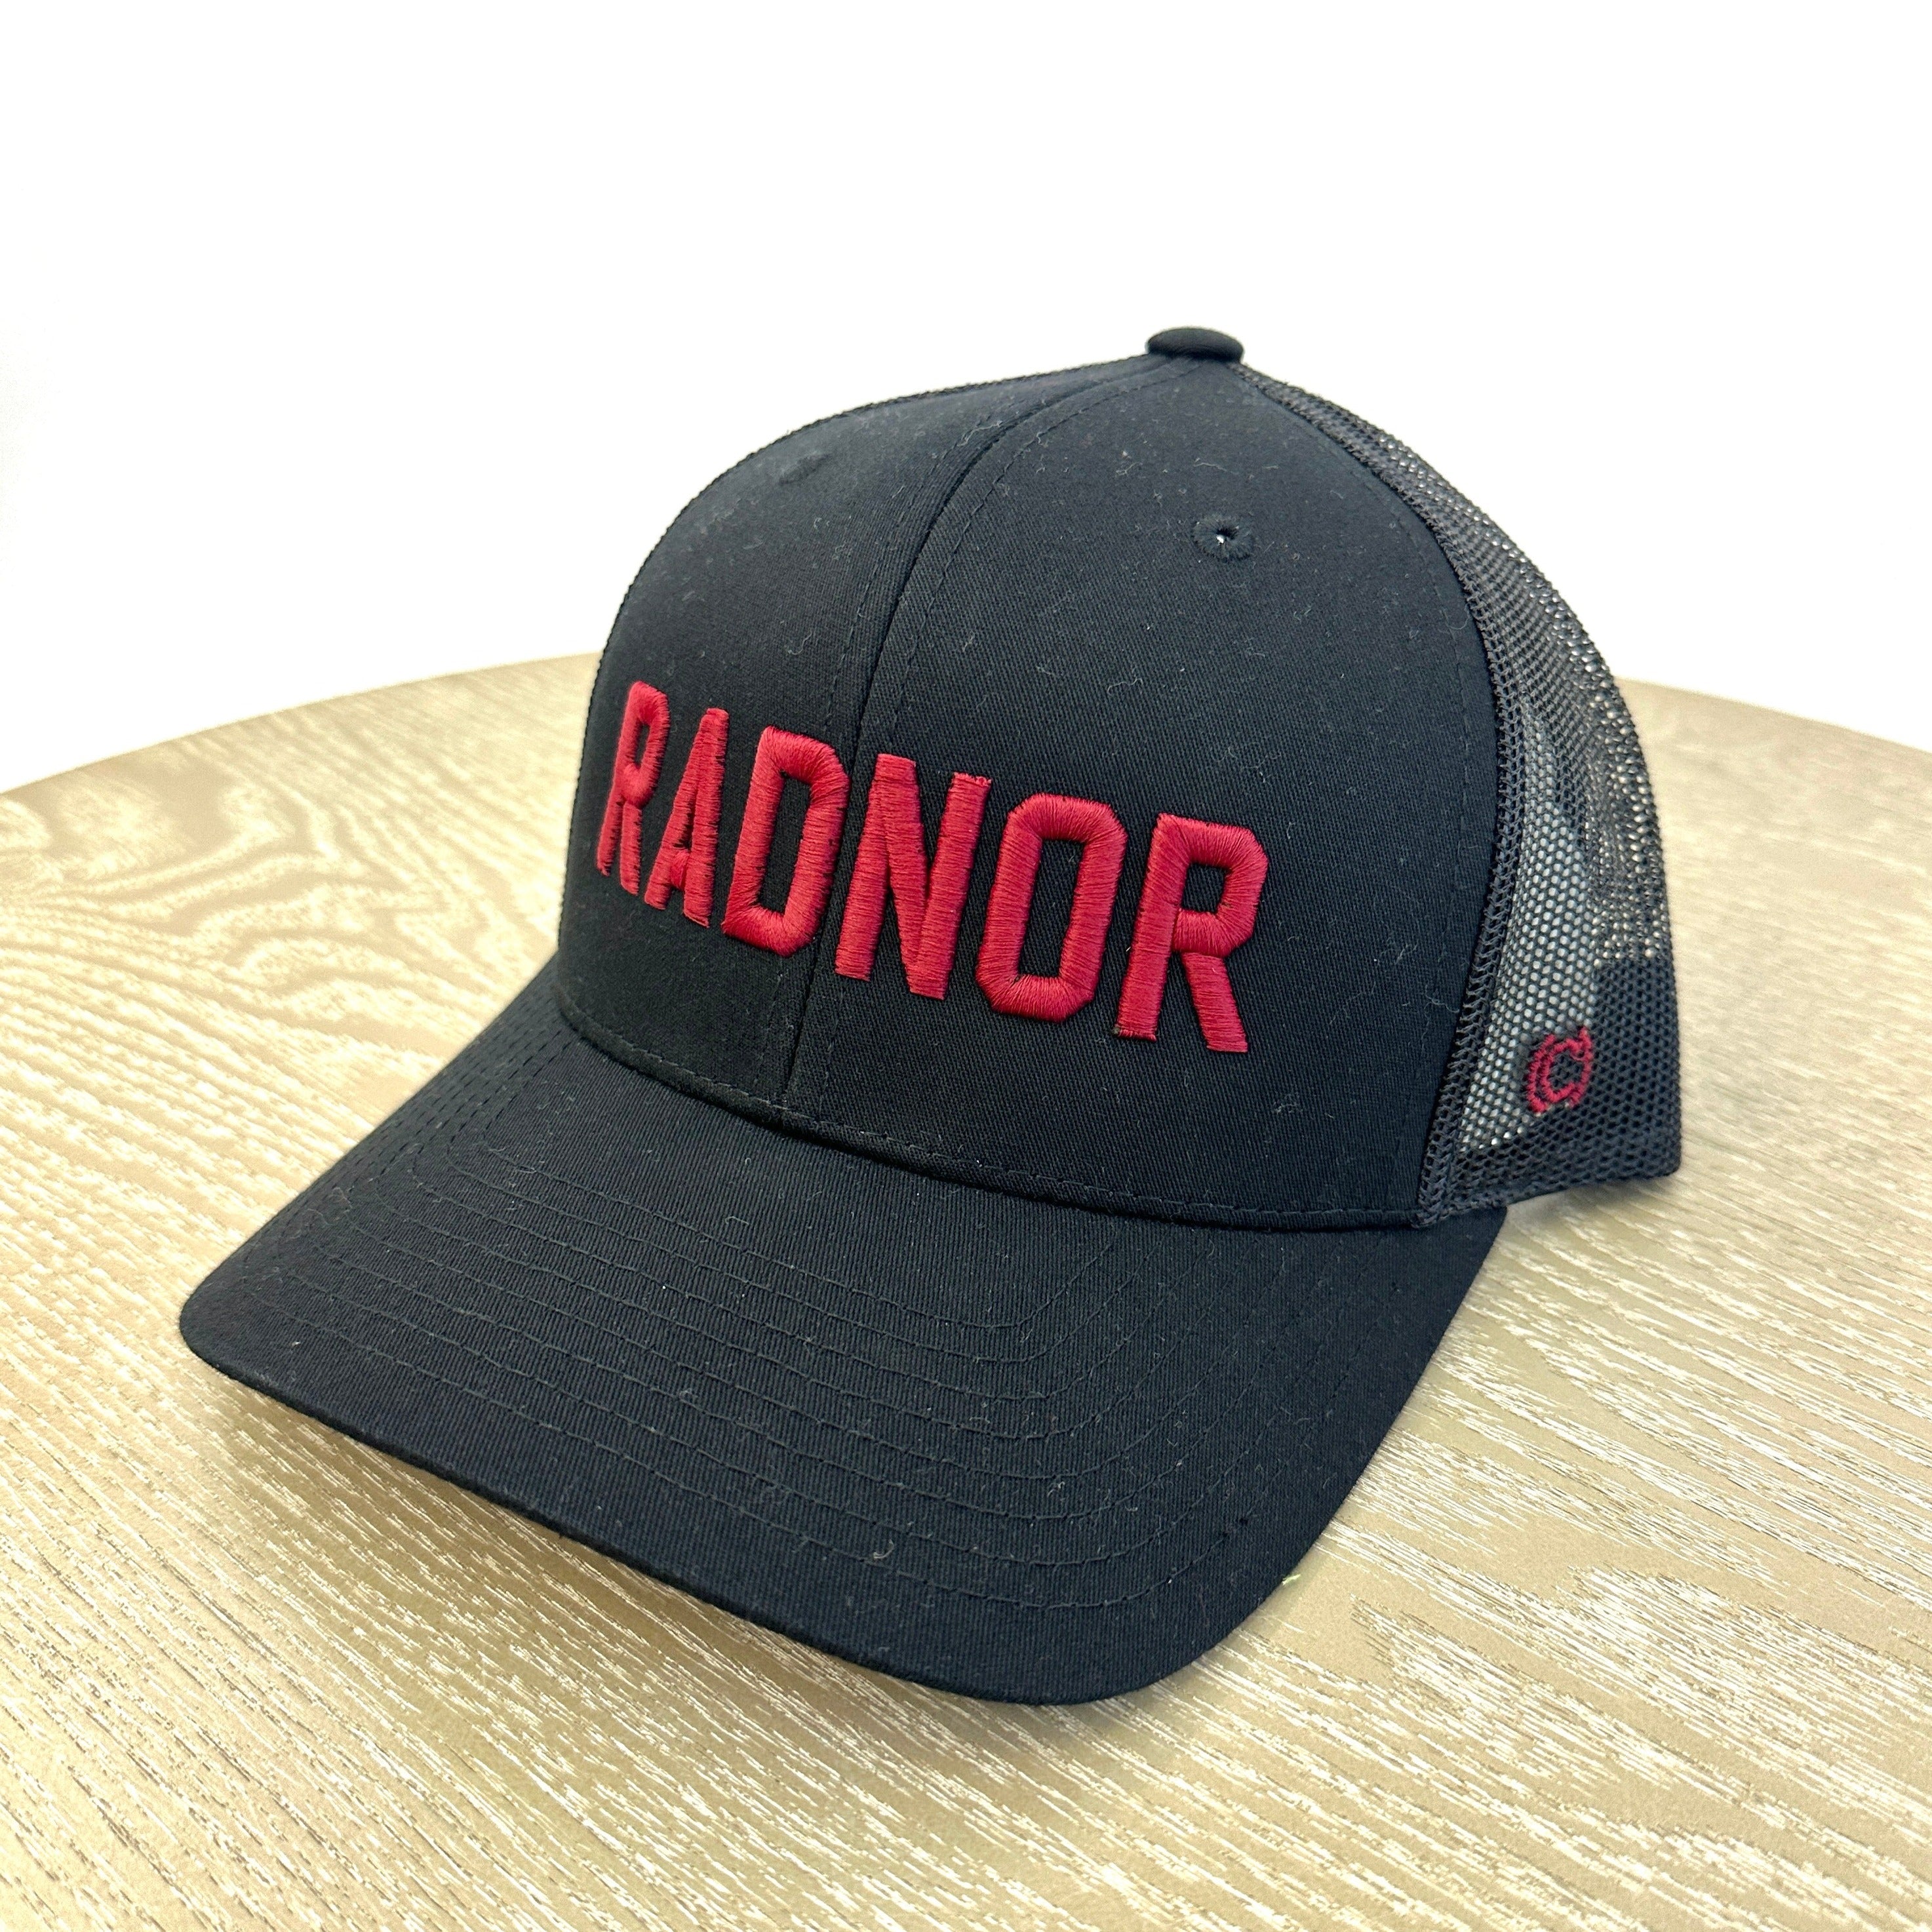 Radnor Trucker Hat